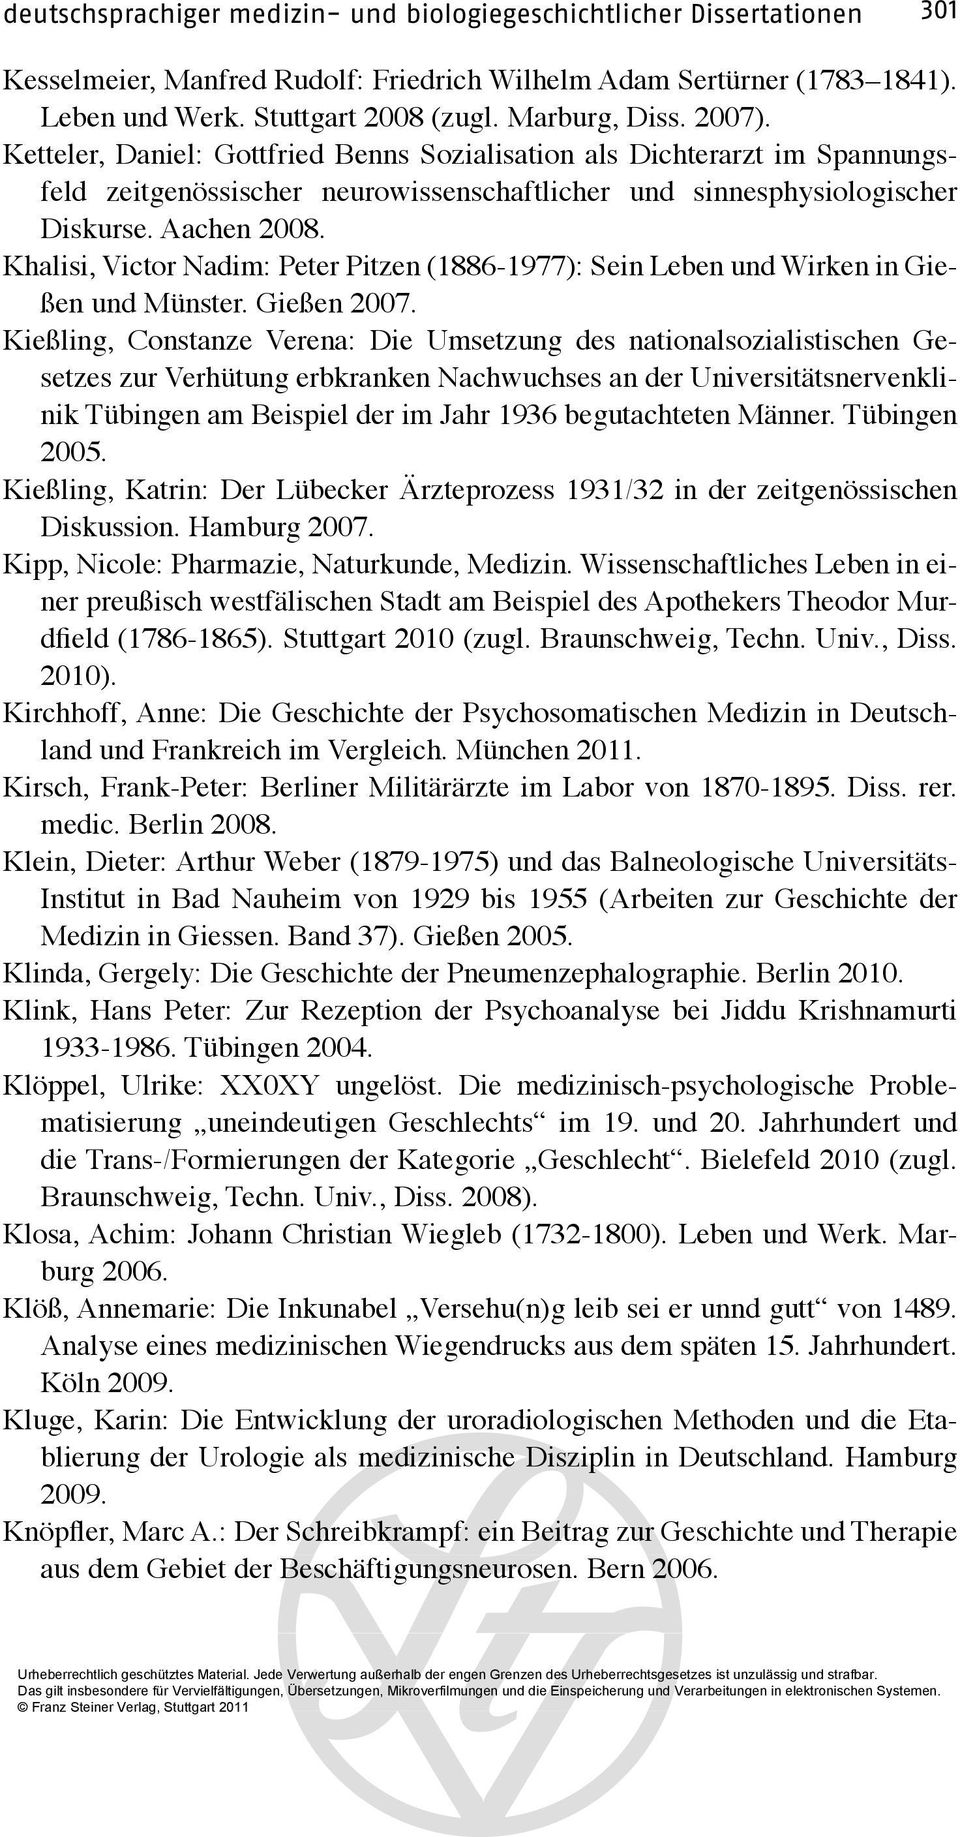 Khalisi, Victor Nadim: Peter Pitzen (1886-1977): Sein Leben und Wirken in Gießen und Münster. Gießen 2007.